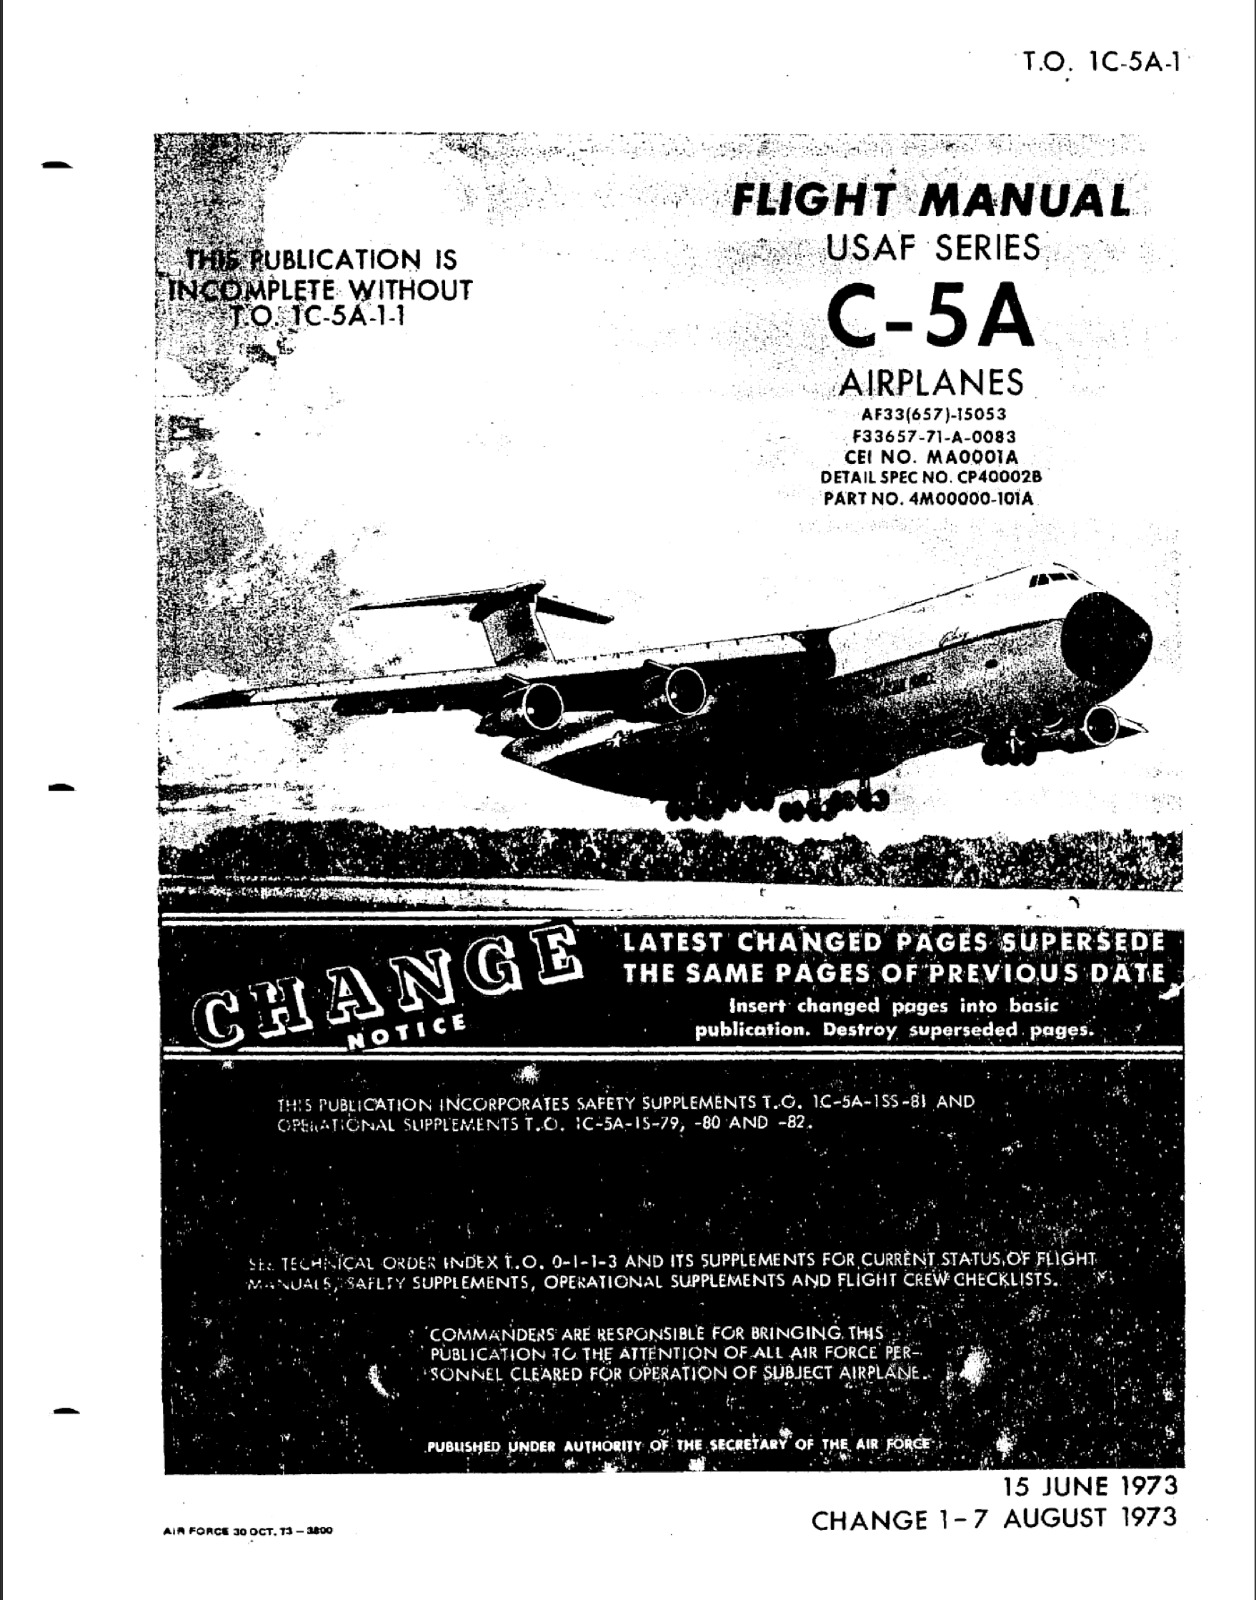 989 Page August 1973 U.S. C-5 C-5A Galaxy T.O. 1C-5A-1 Flight Manual on Data CD